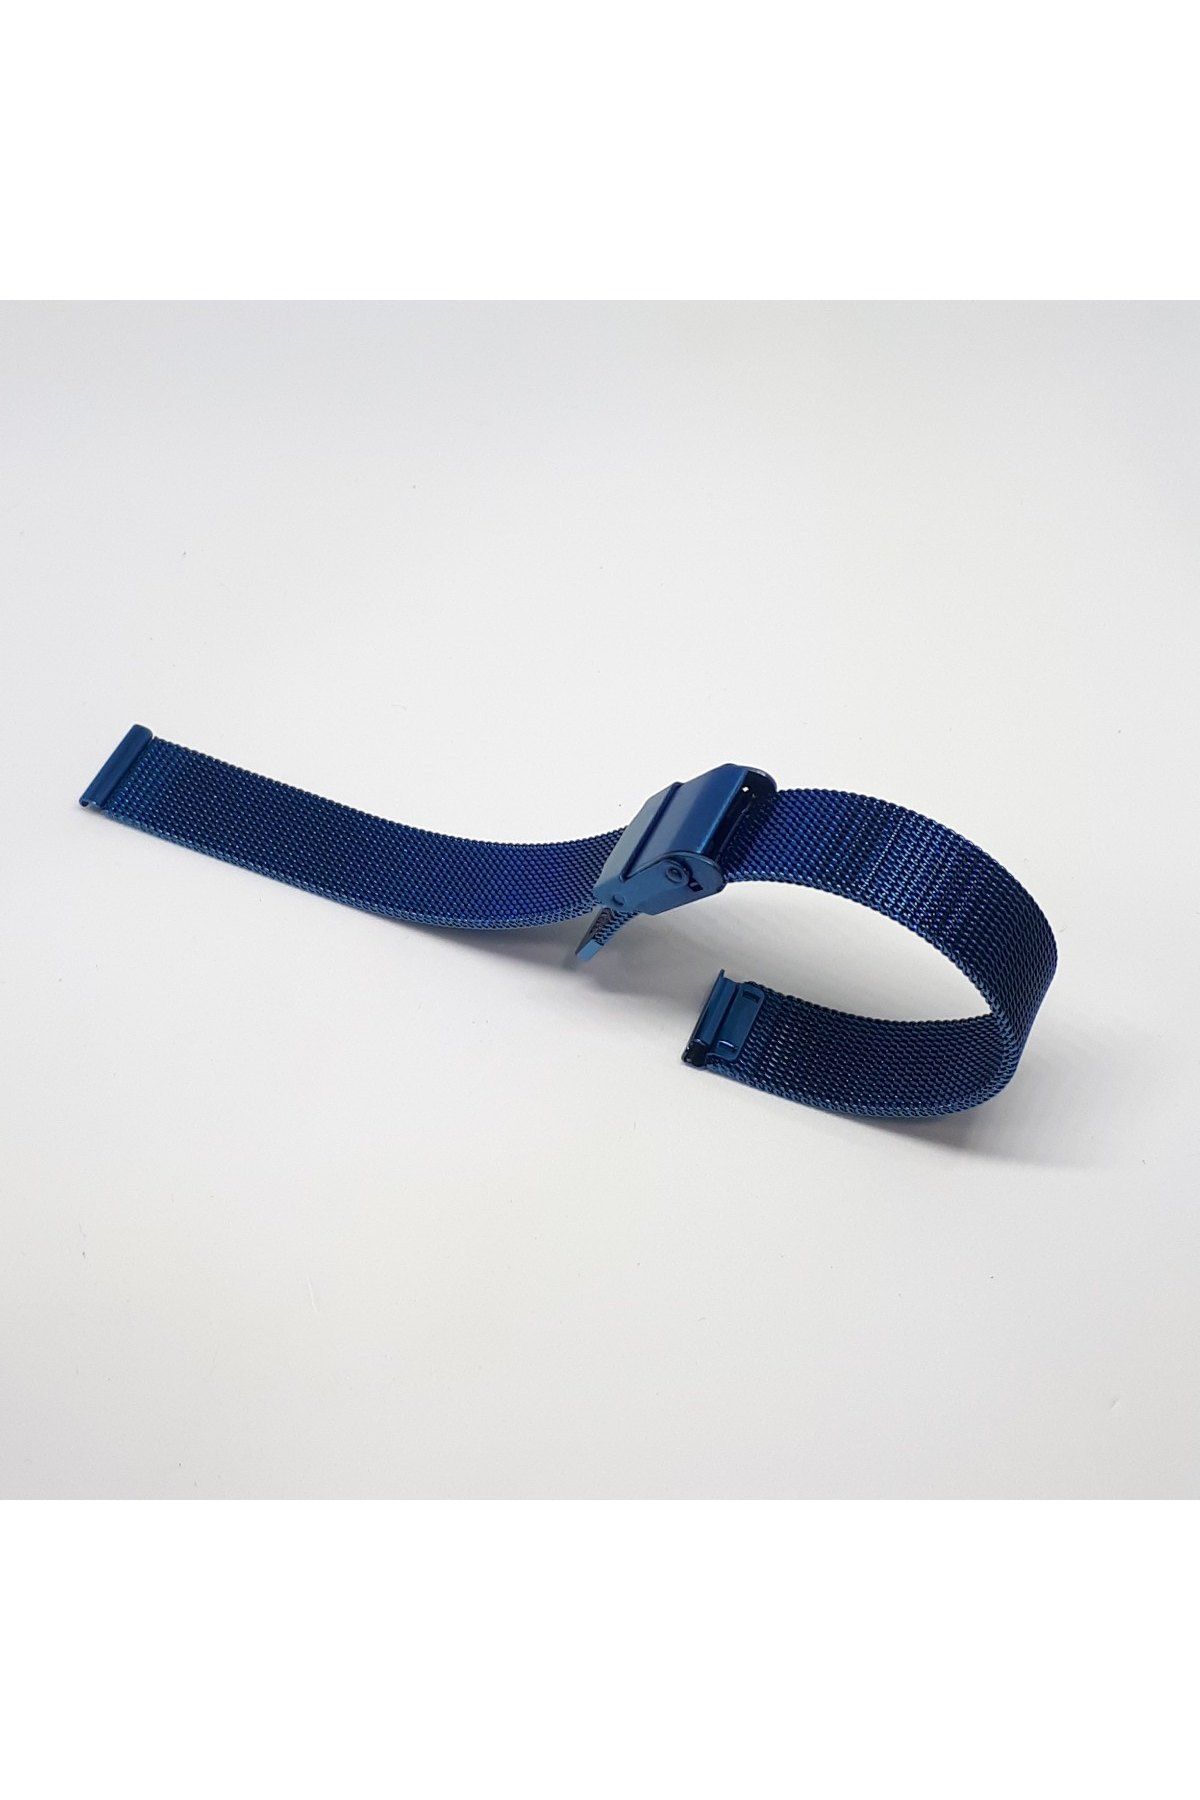 8mm Lacivert Mavi Renk Hasır Ince Örgü Çelik Kaplama Metal Saat Kordonu